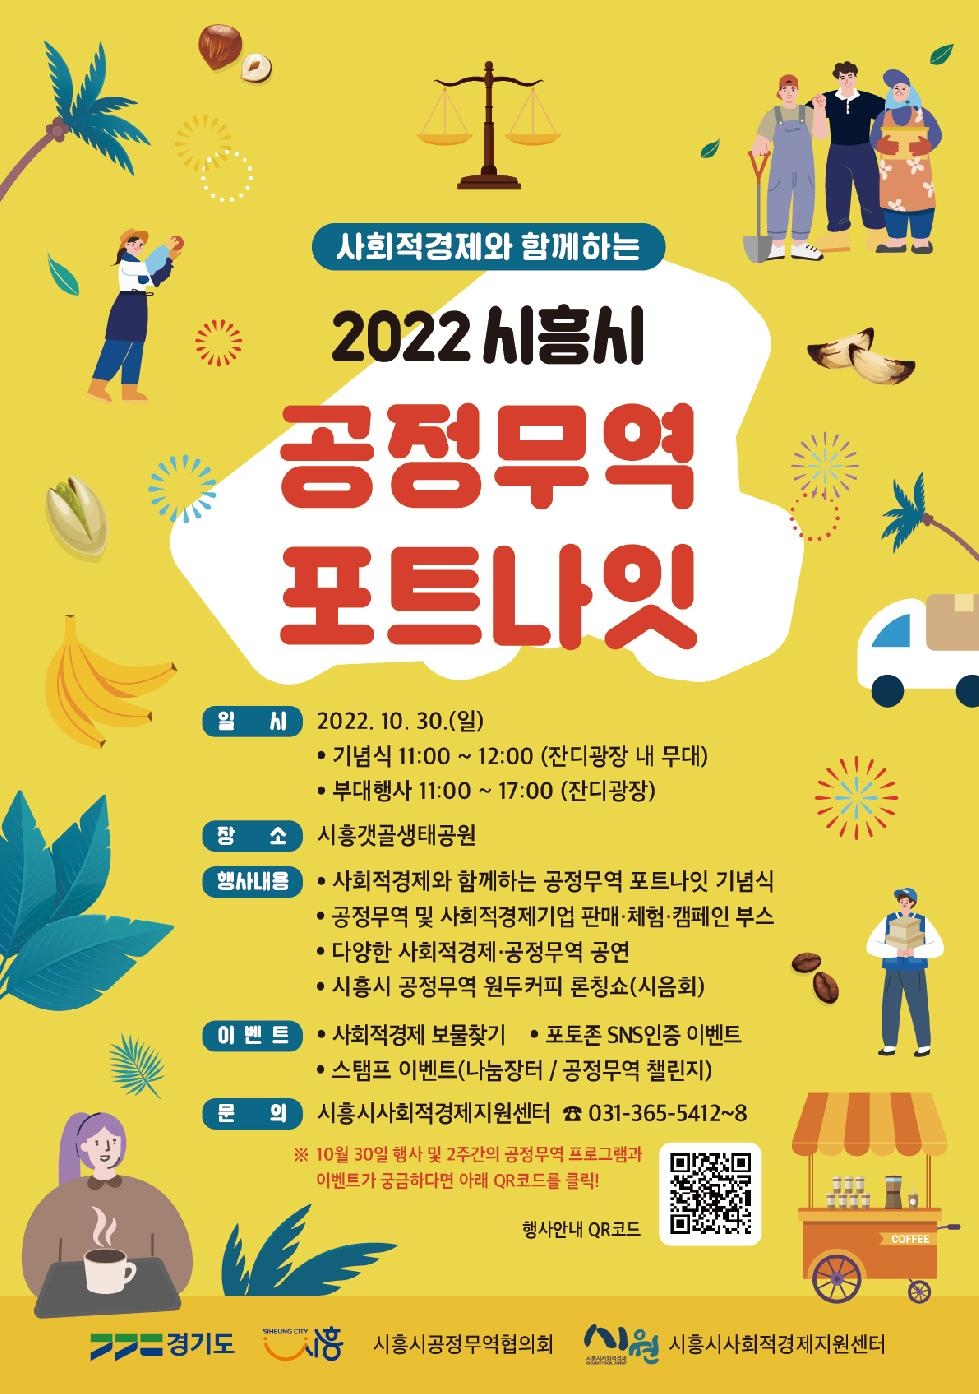 시흥시,[2022 사회적경제와 함께하는 공정무역 포트나잇]연다